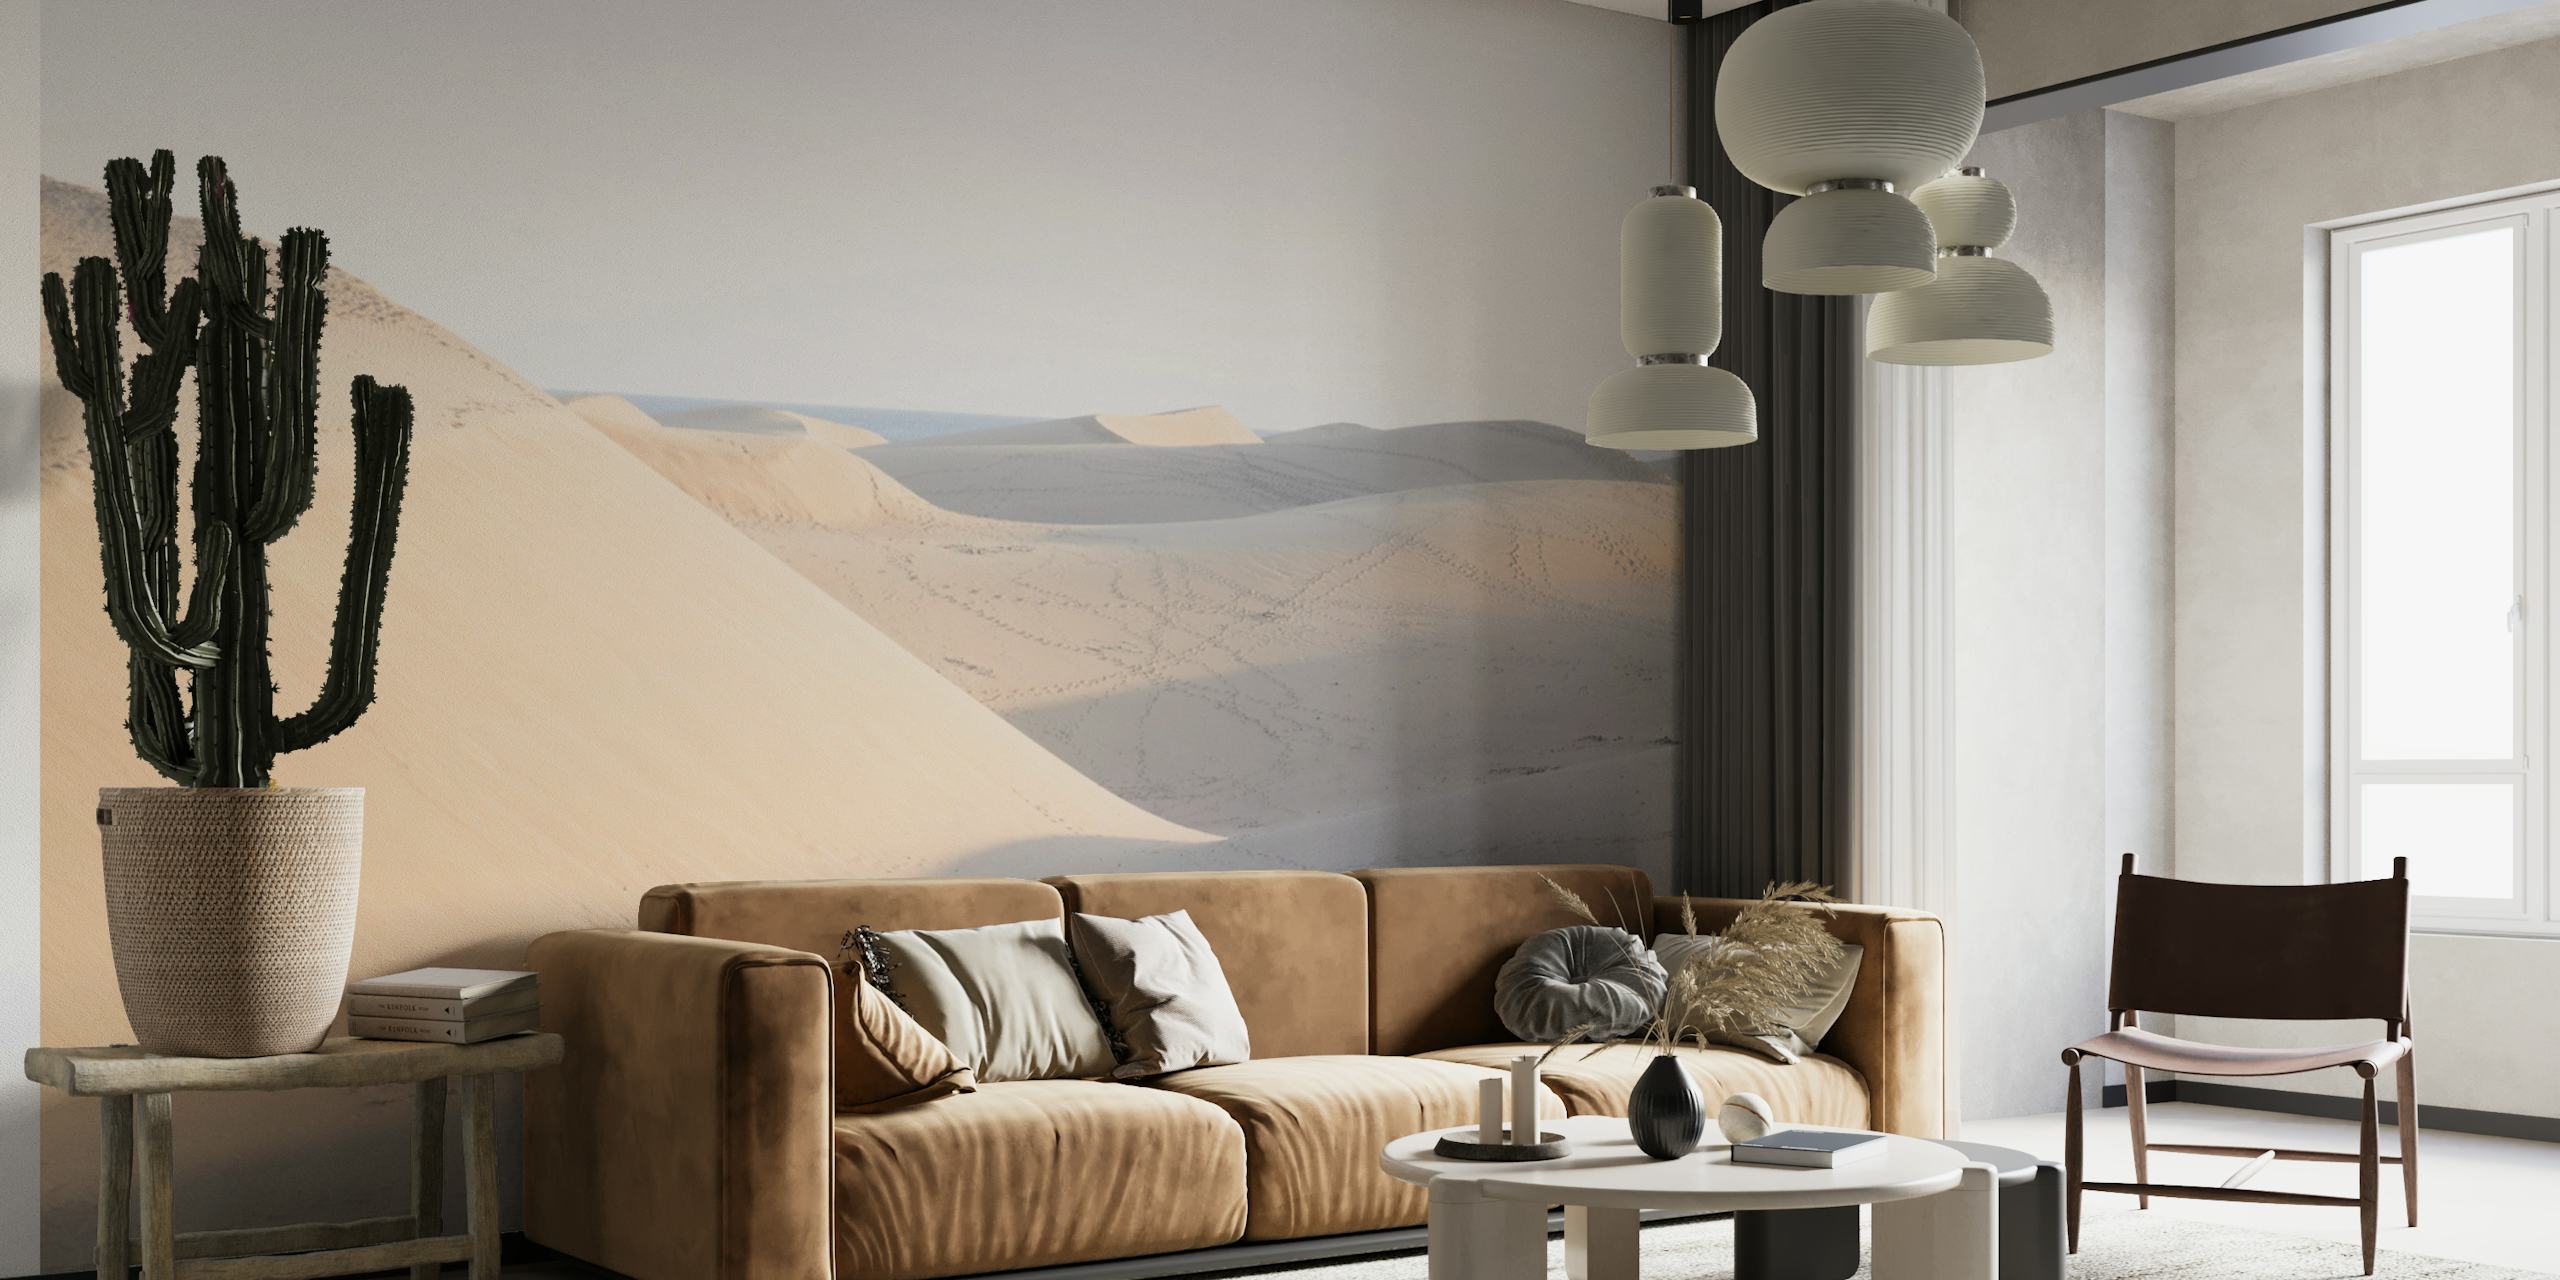 Rustige muurschildering in een woestijntafereel met zachte duinen en subtiele schaduwen